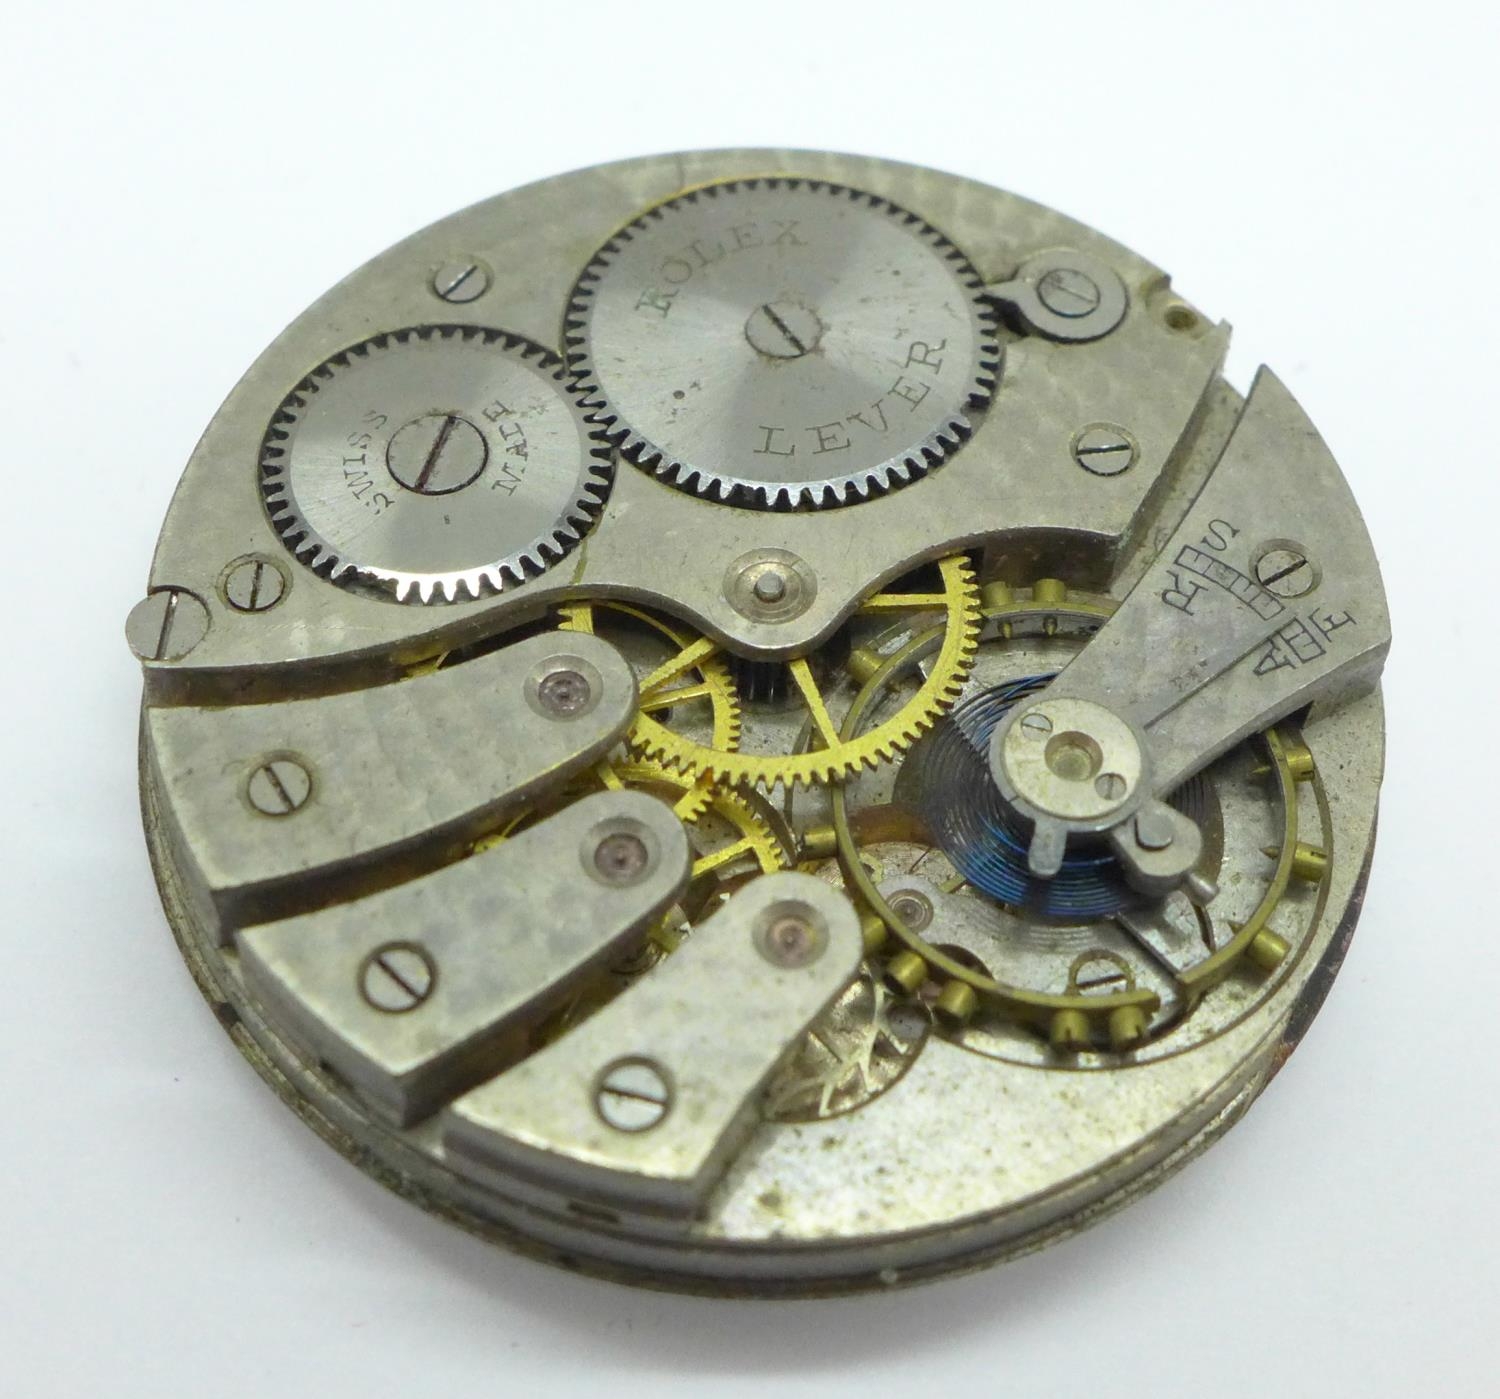 A Rolex pocket watch movement